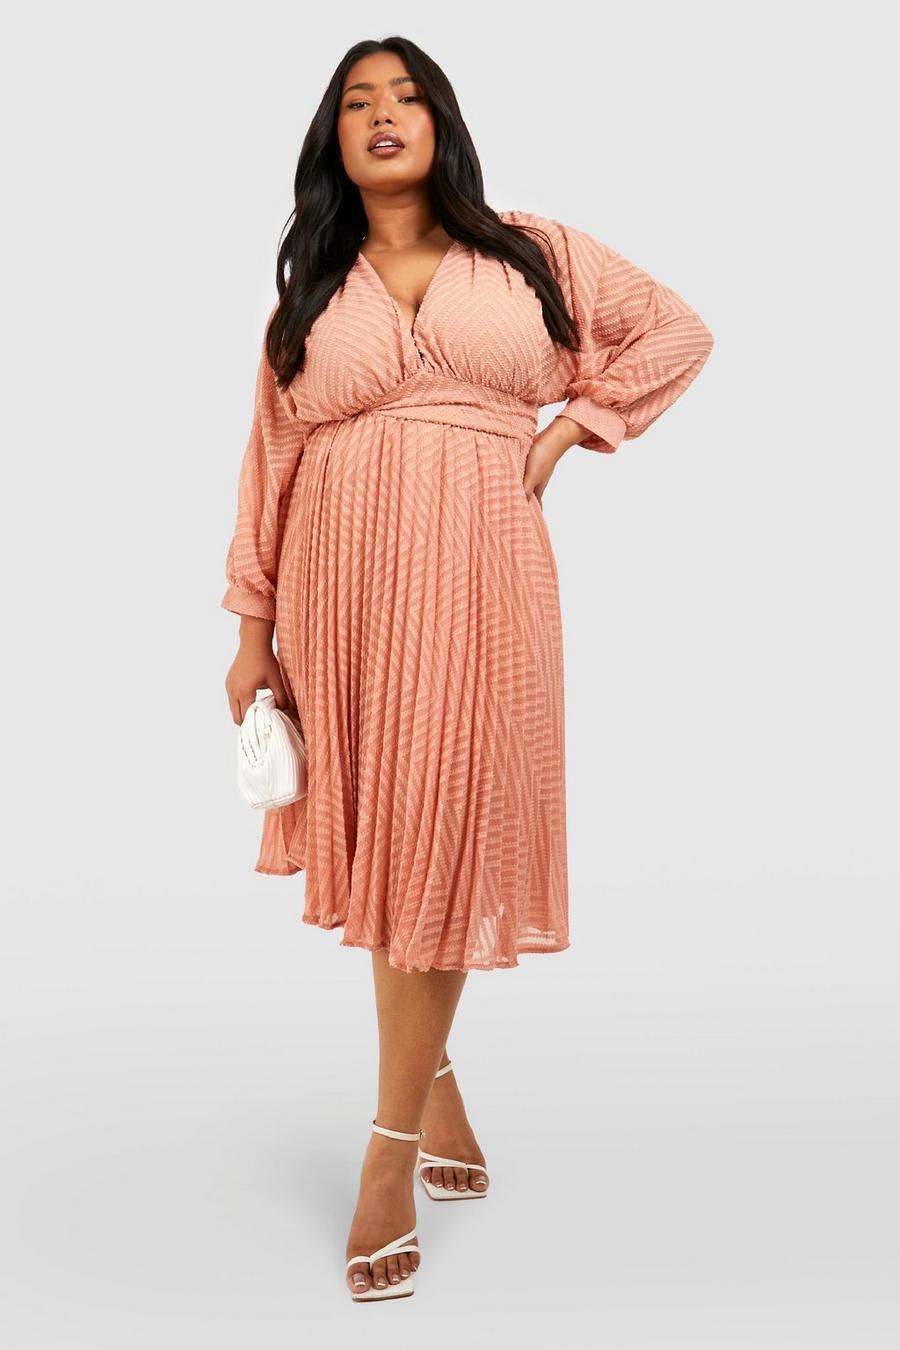 Blush שמלת סקייטר מידי שיפון עם טקסטורה למידות גדולות